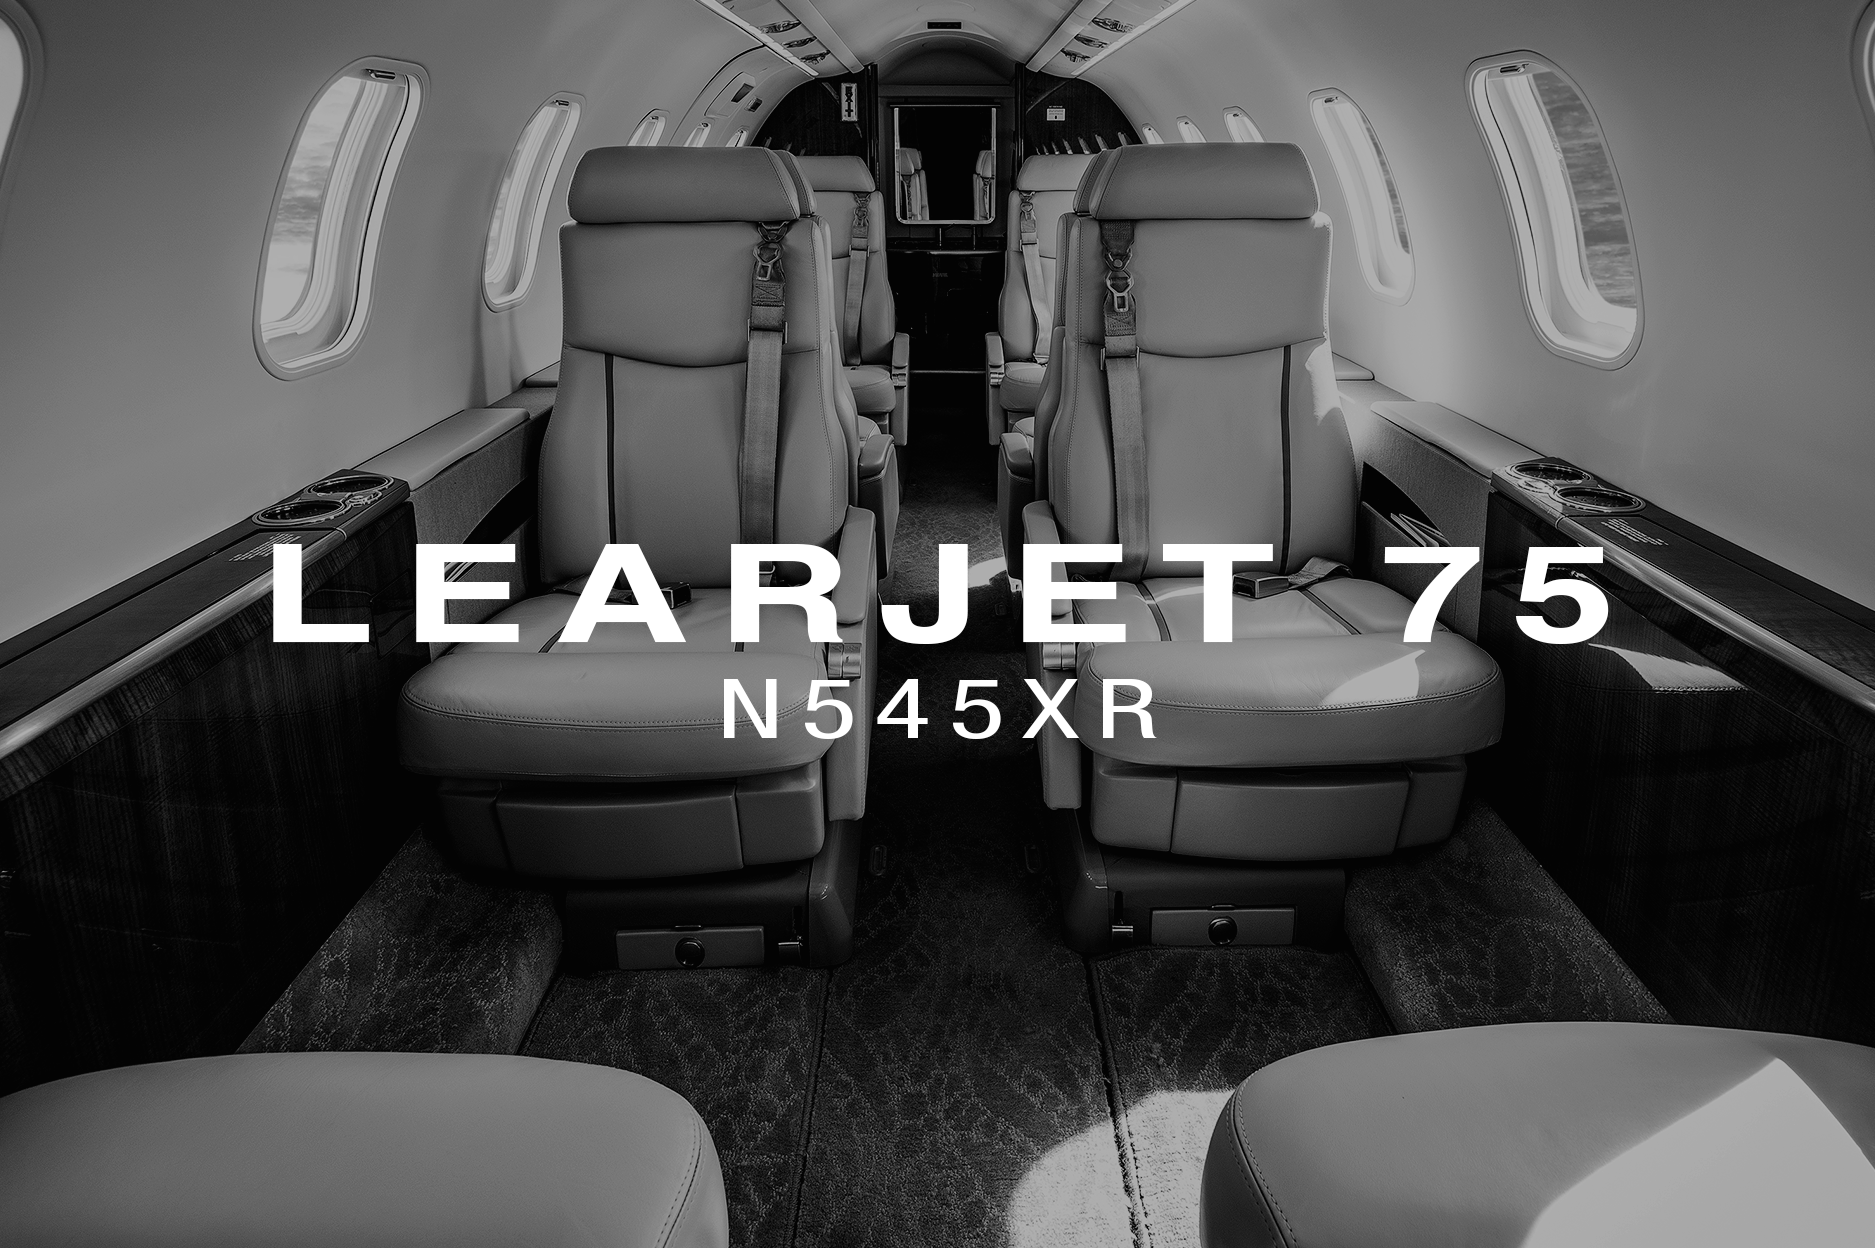 Learjet 75 N545XR